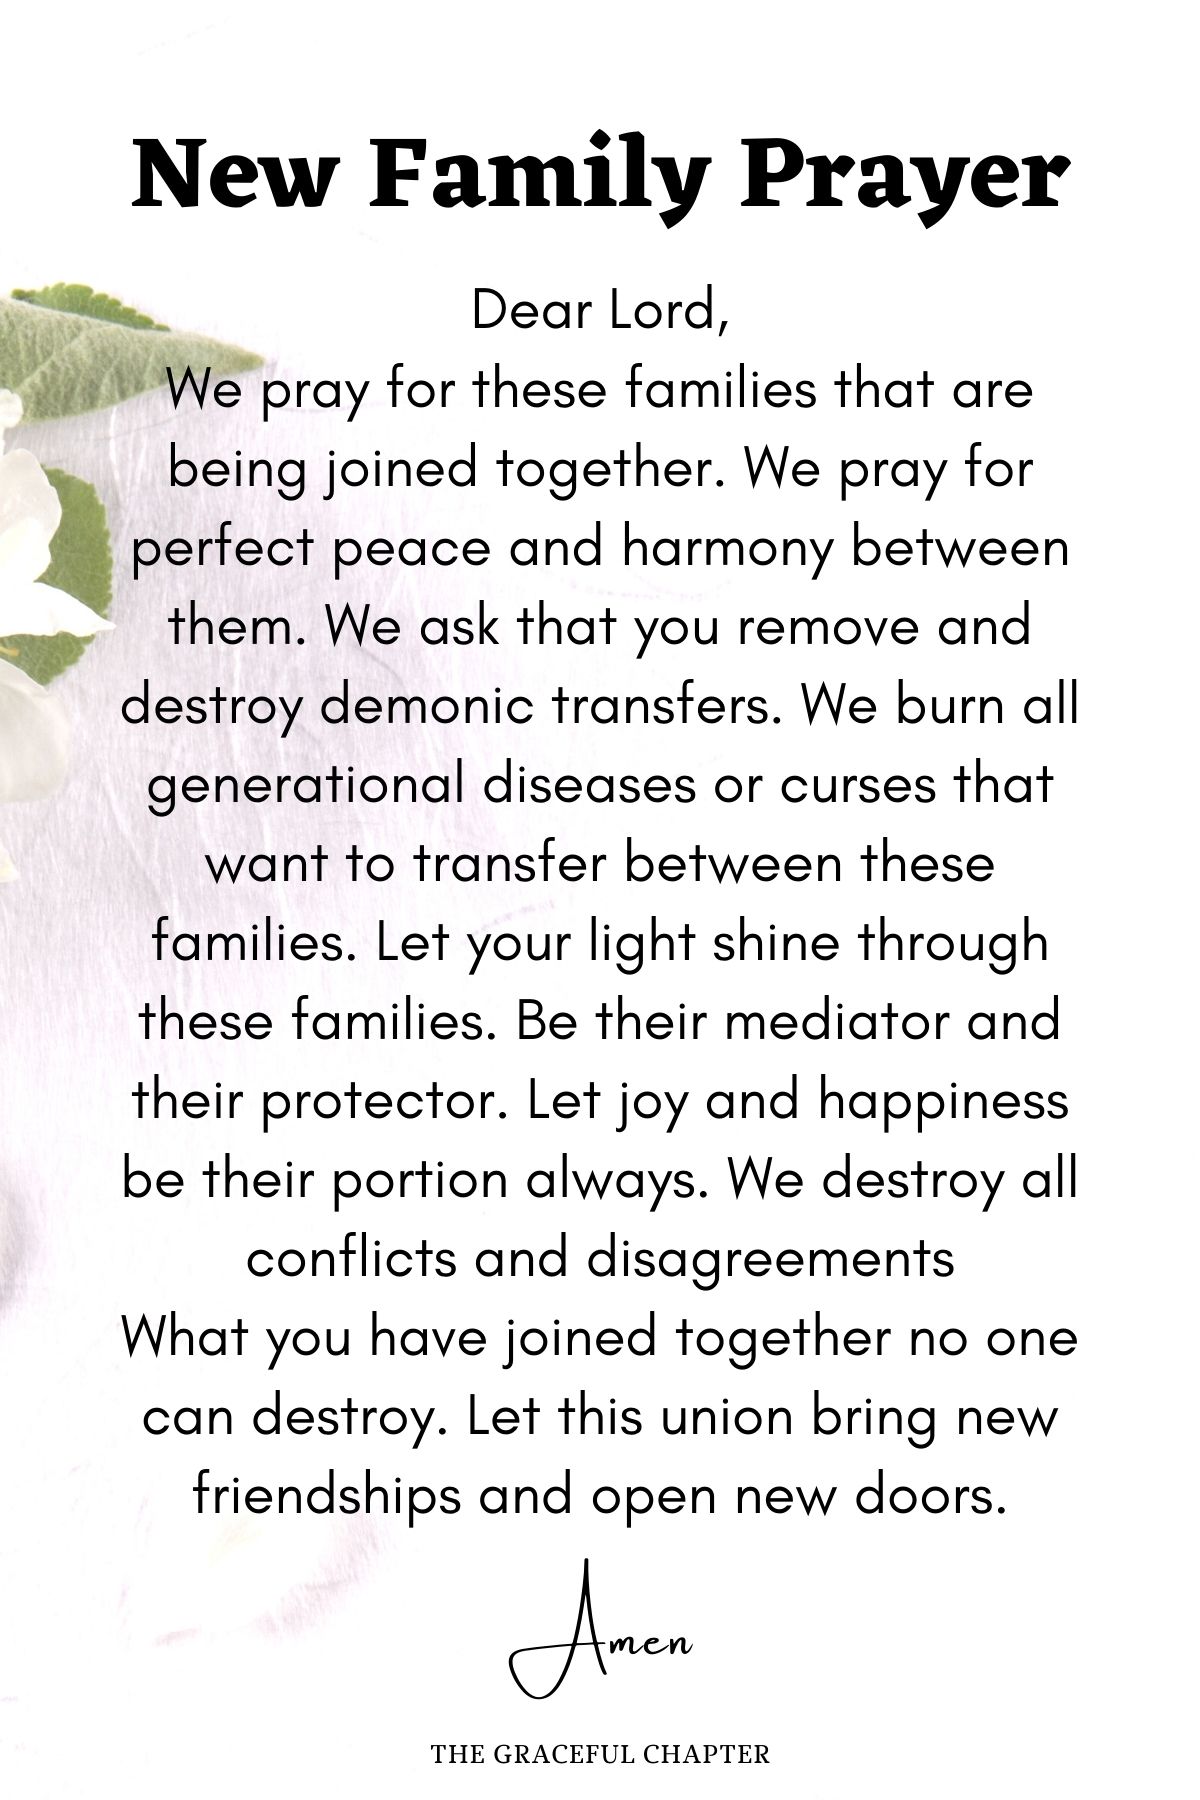 New family prayer